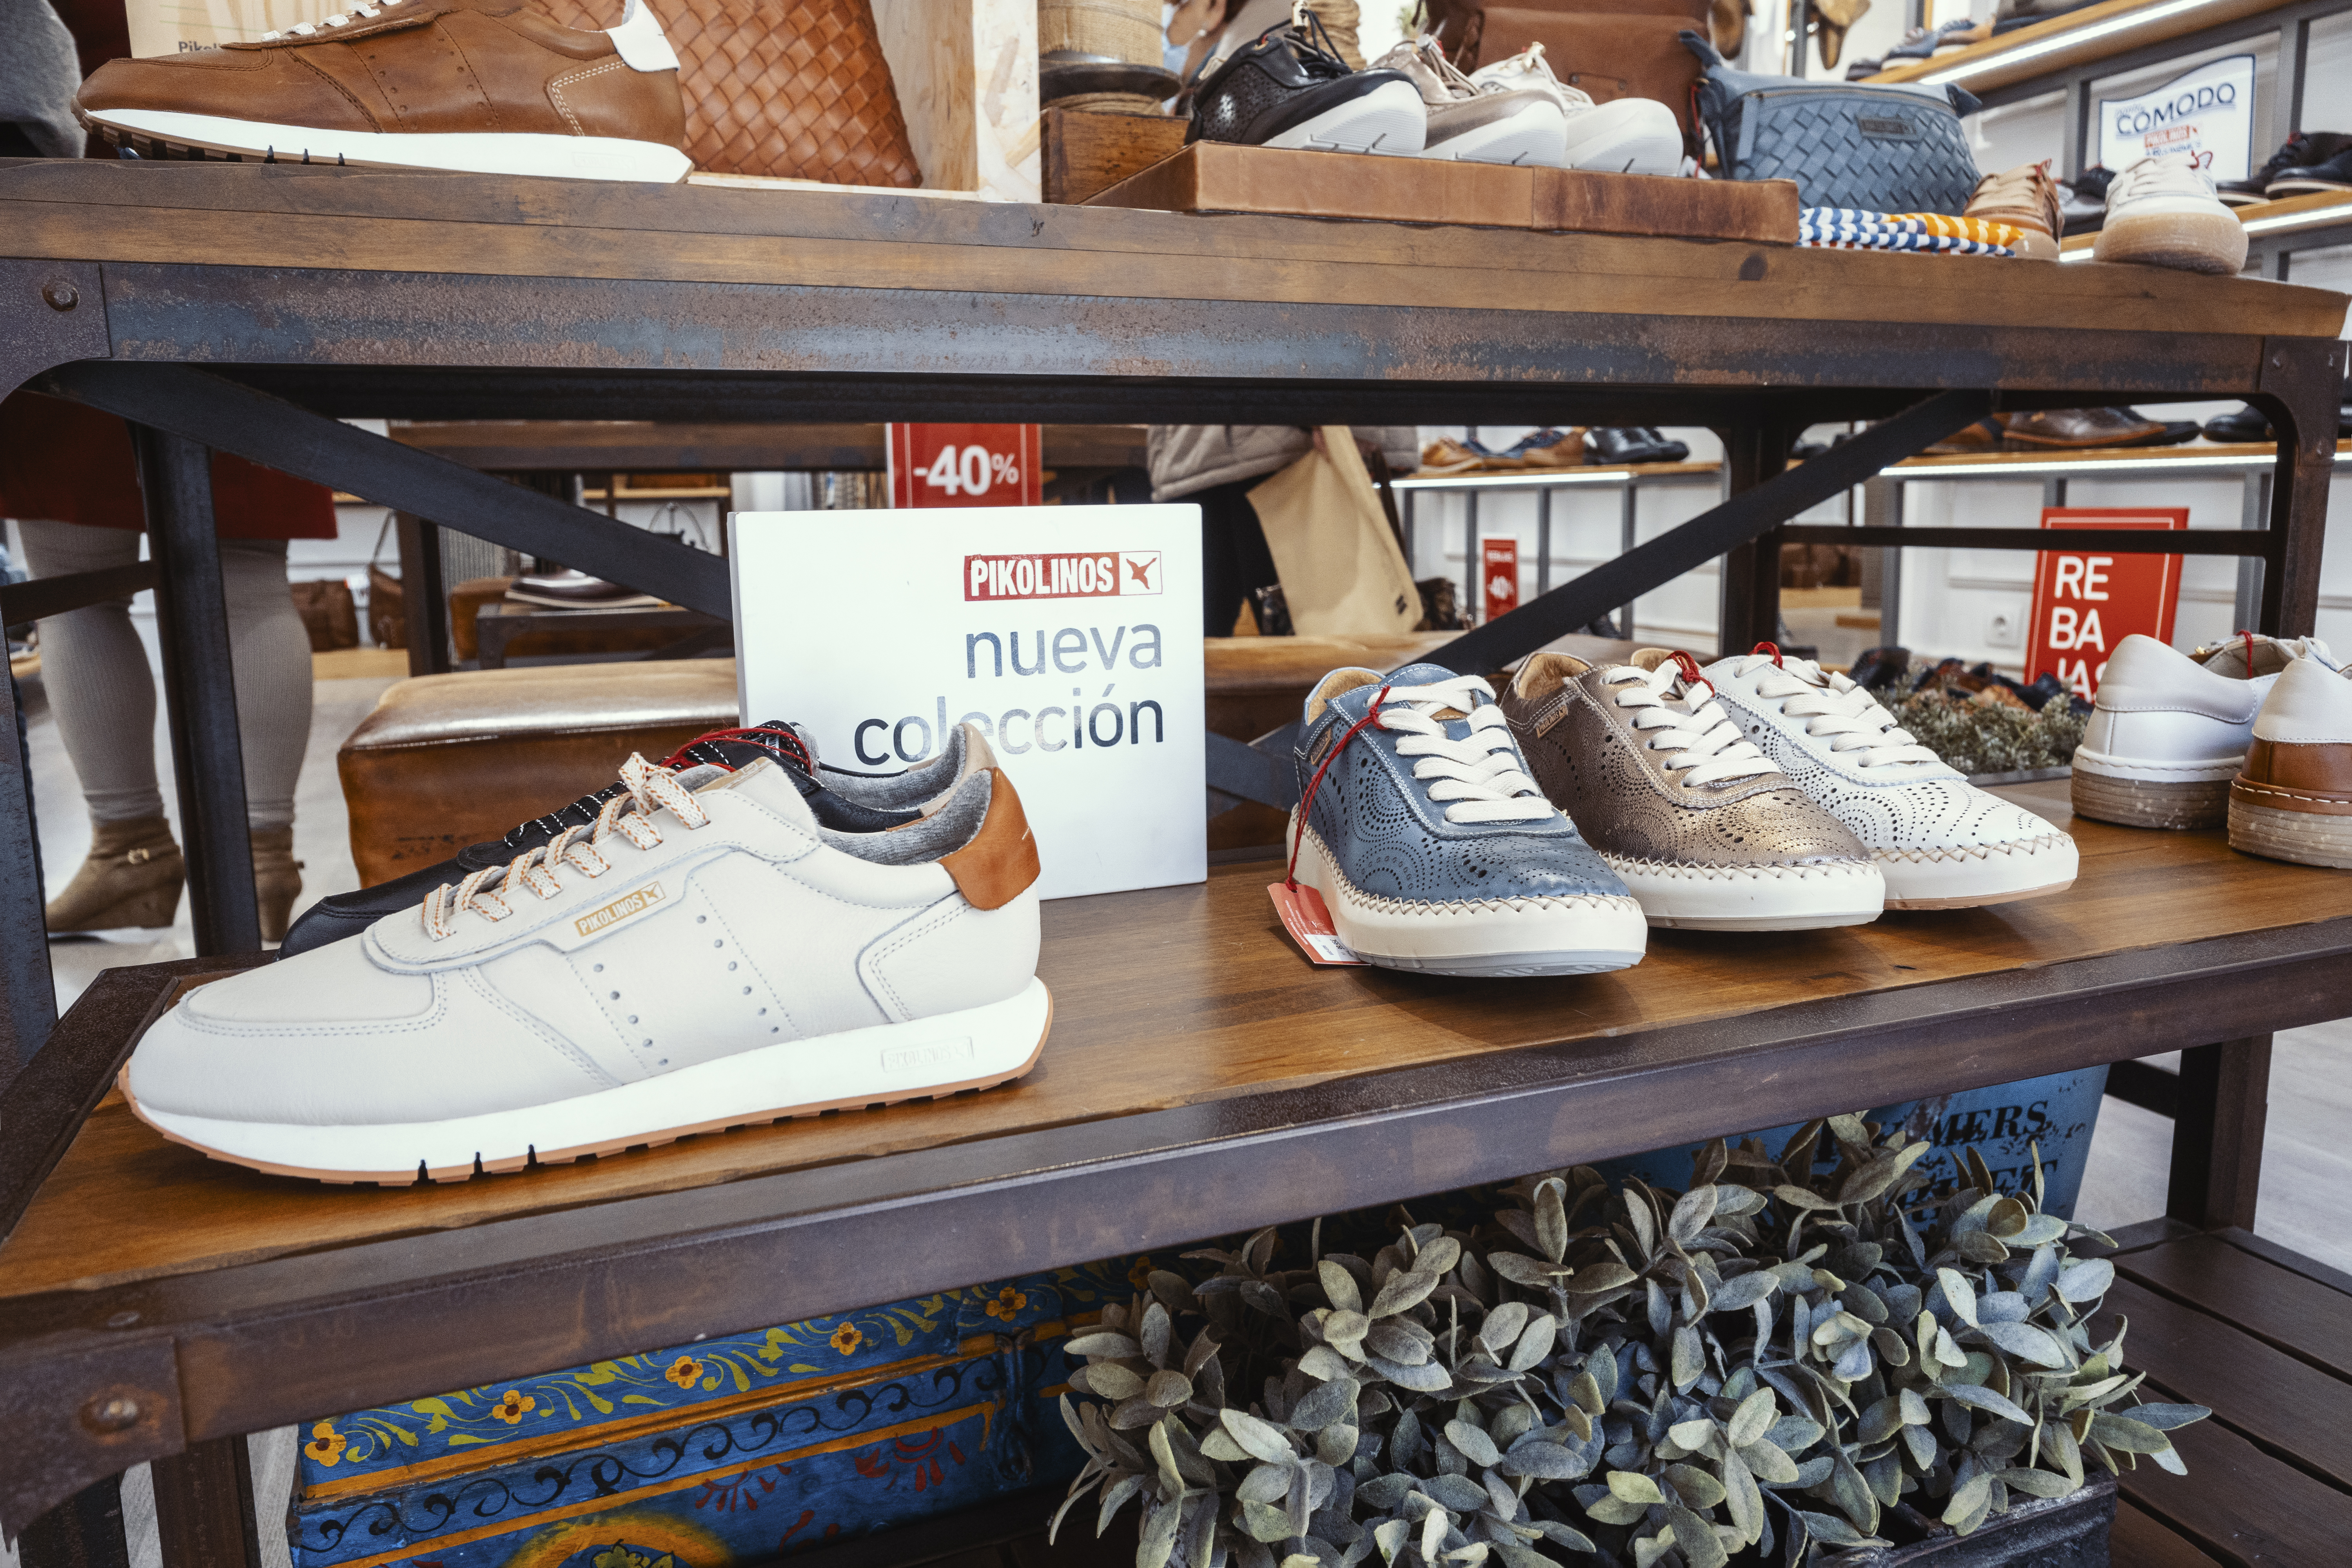 Image des chaussures Pikolinos de la nouvelle collection dans la boutique de Malaga